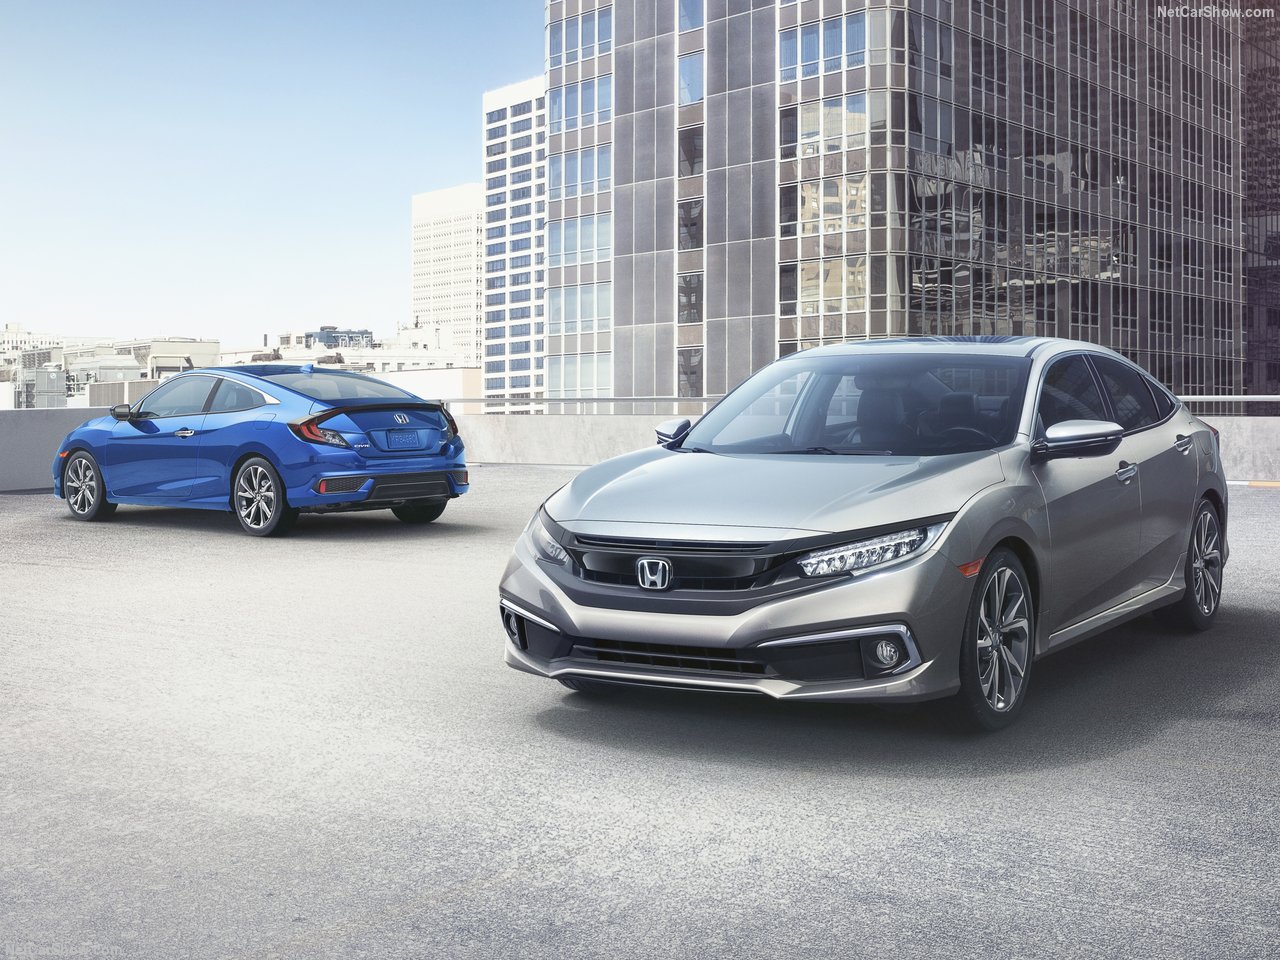 2019 Honda Civic Sedan ve Copue ortaya çıktı! Yeni Honda Civic Sedan ve Copue’nin özellikleri neler?